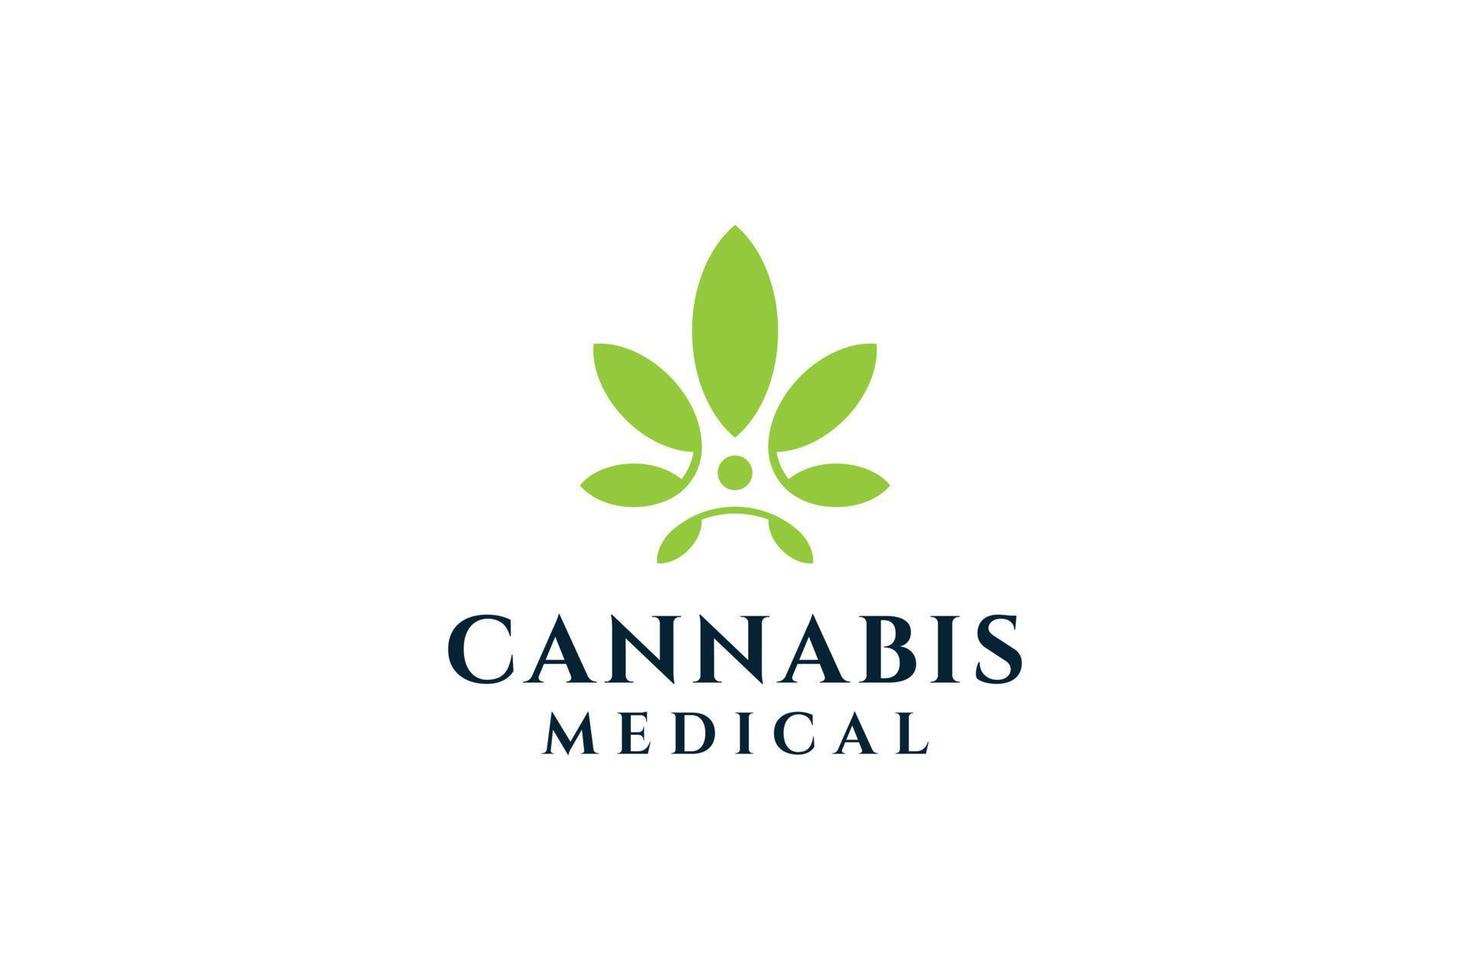 Cannabis organic grass care logo design vector